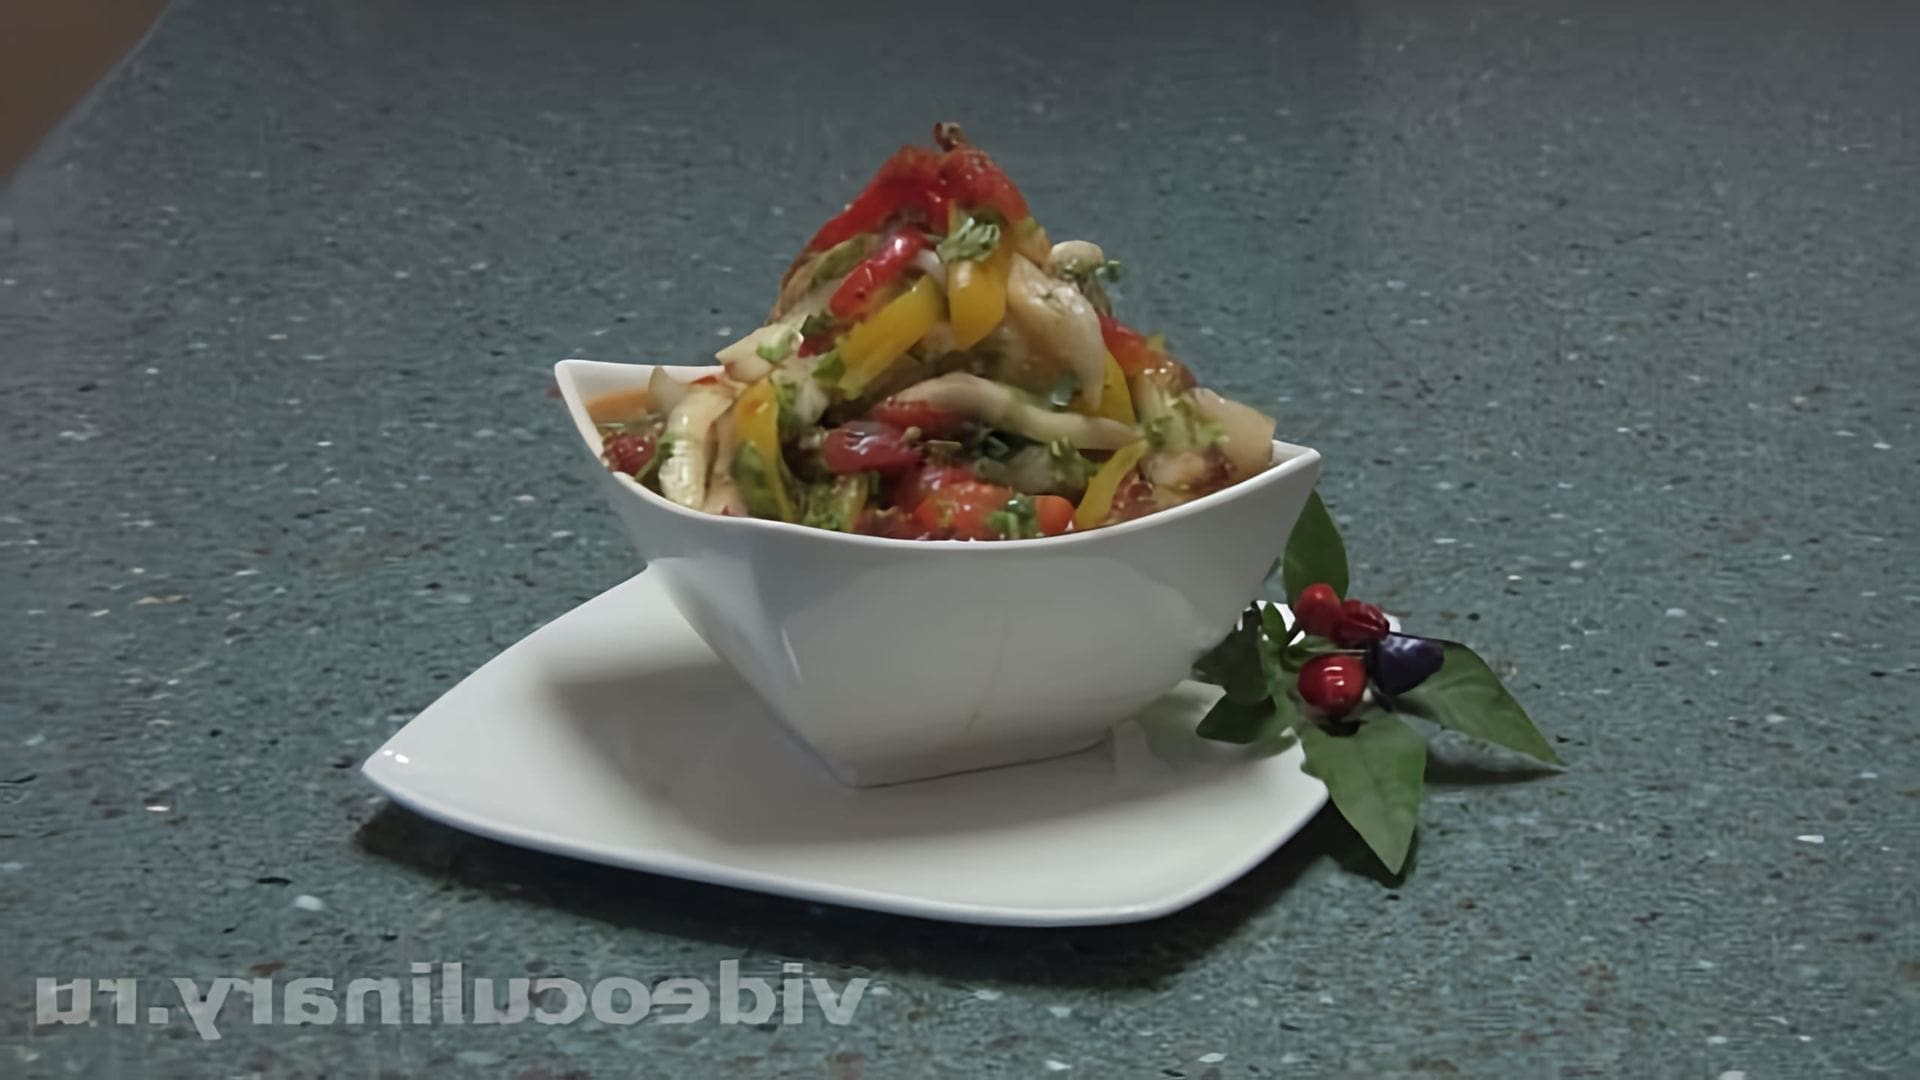 В этом видео демонстрируется рецепт салата из баклажанов по-средиземноморски